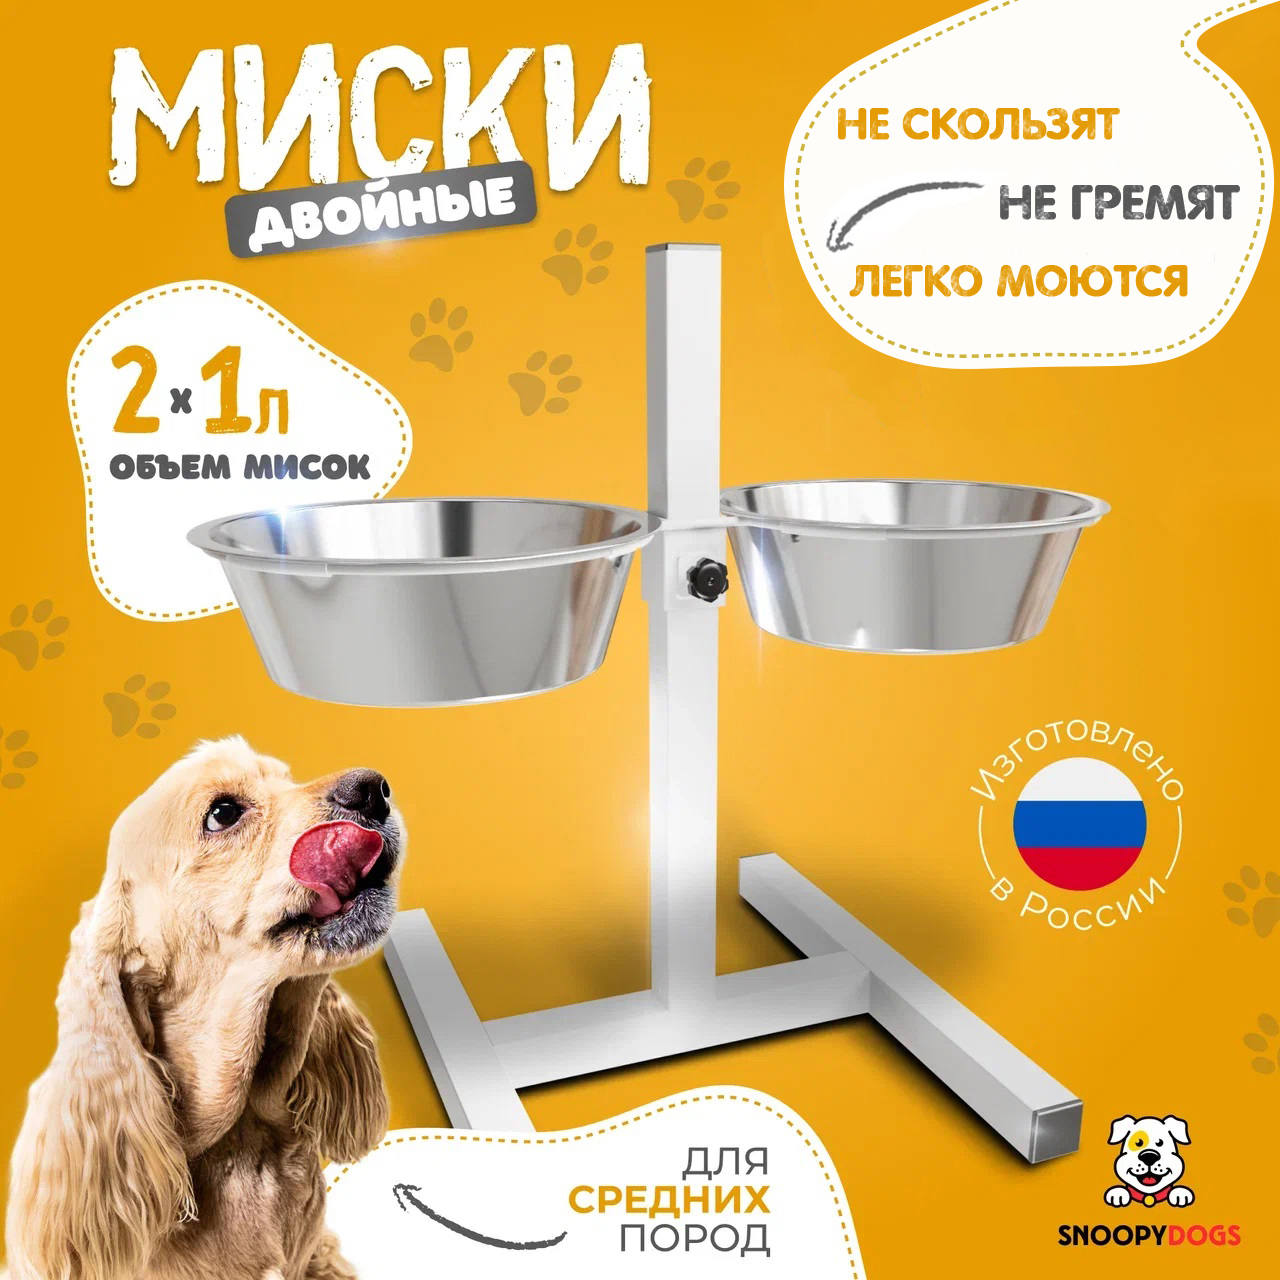 Миски для собак Snoopy Dogs на подставке, двойные, белые, нержавеющая сталь, 2 шт по 1 л